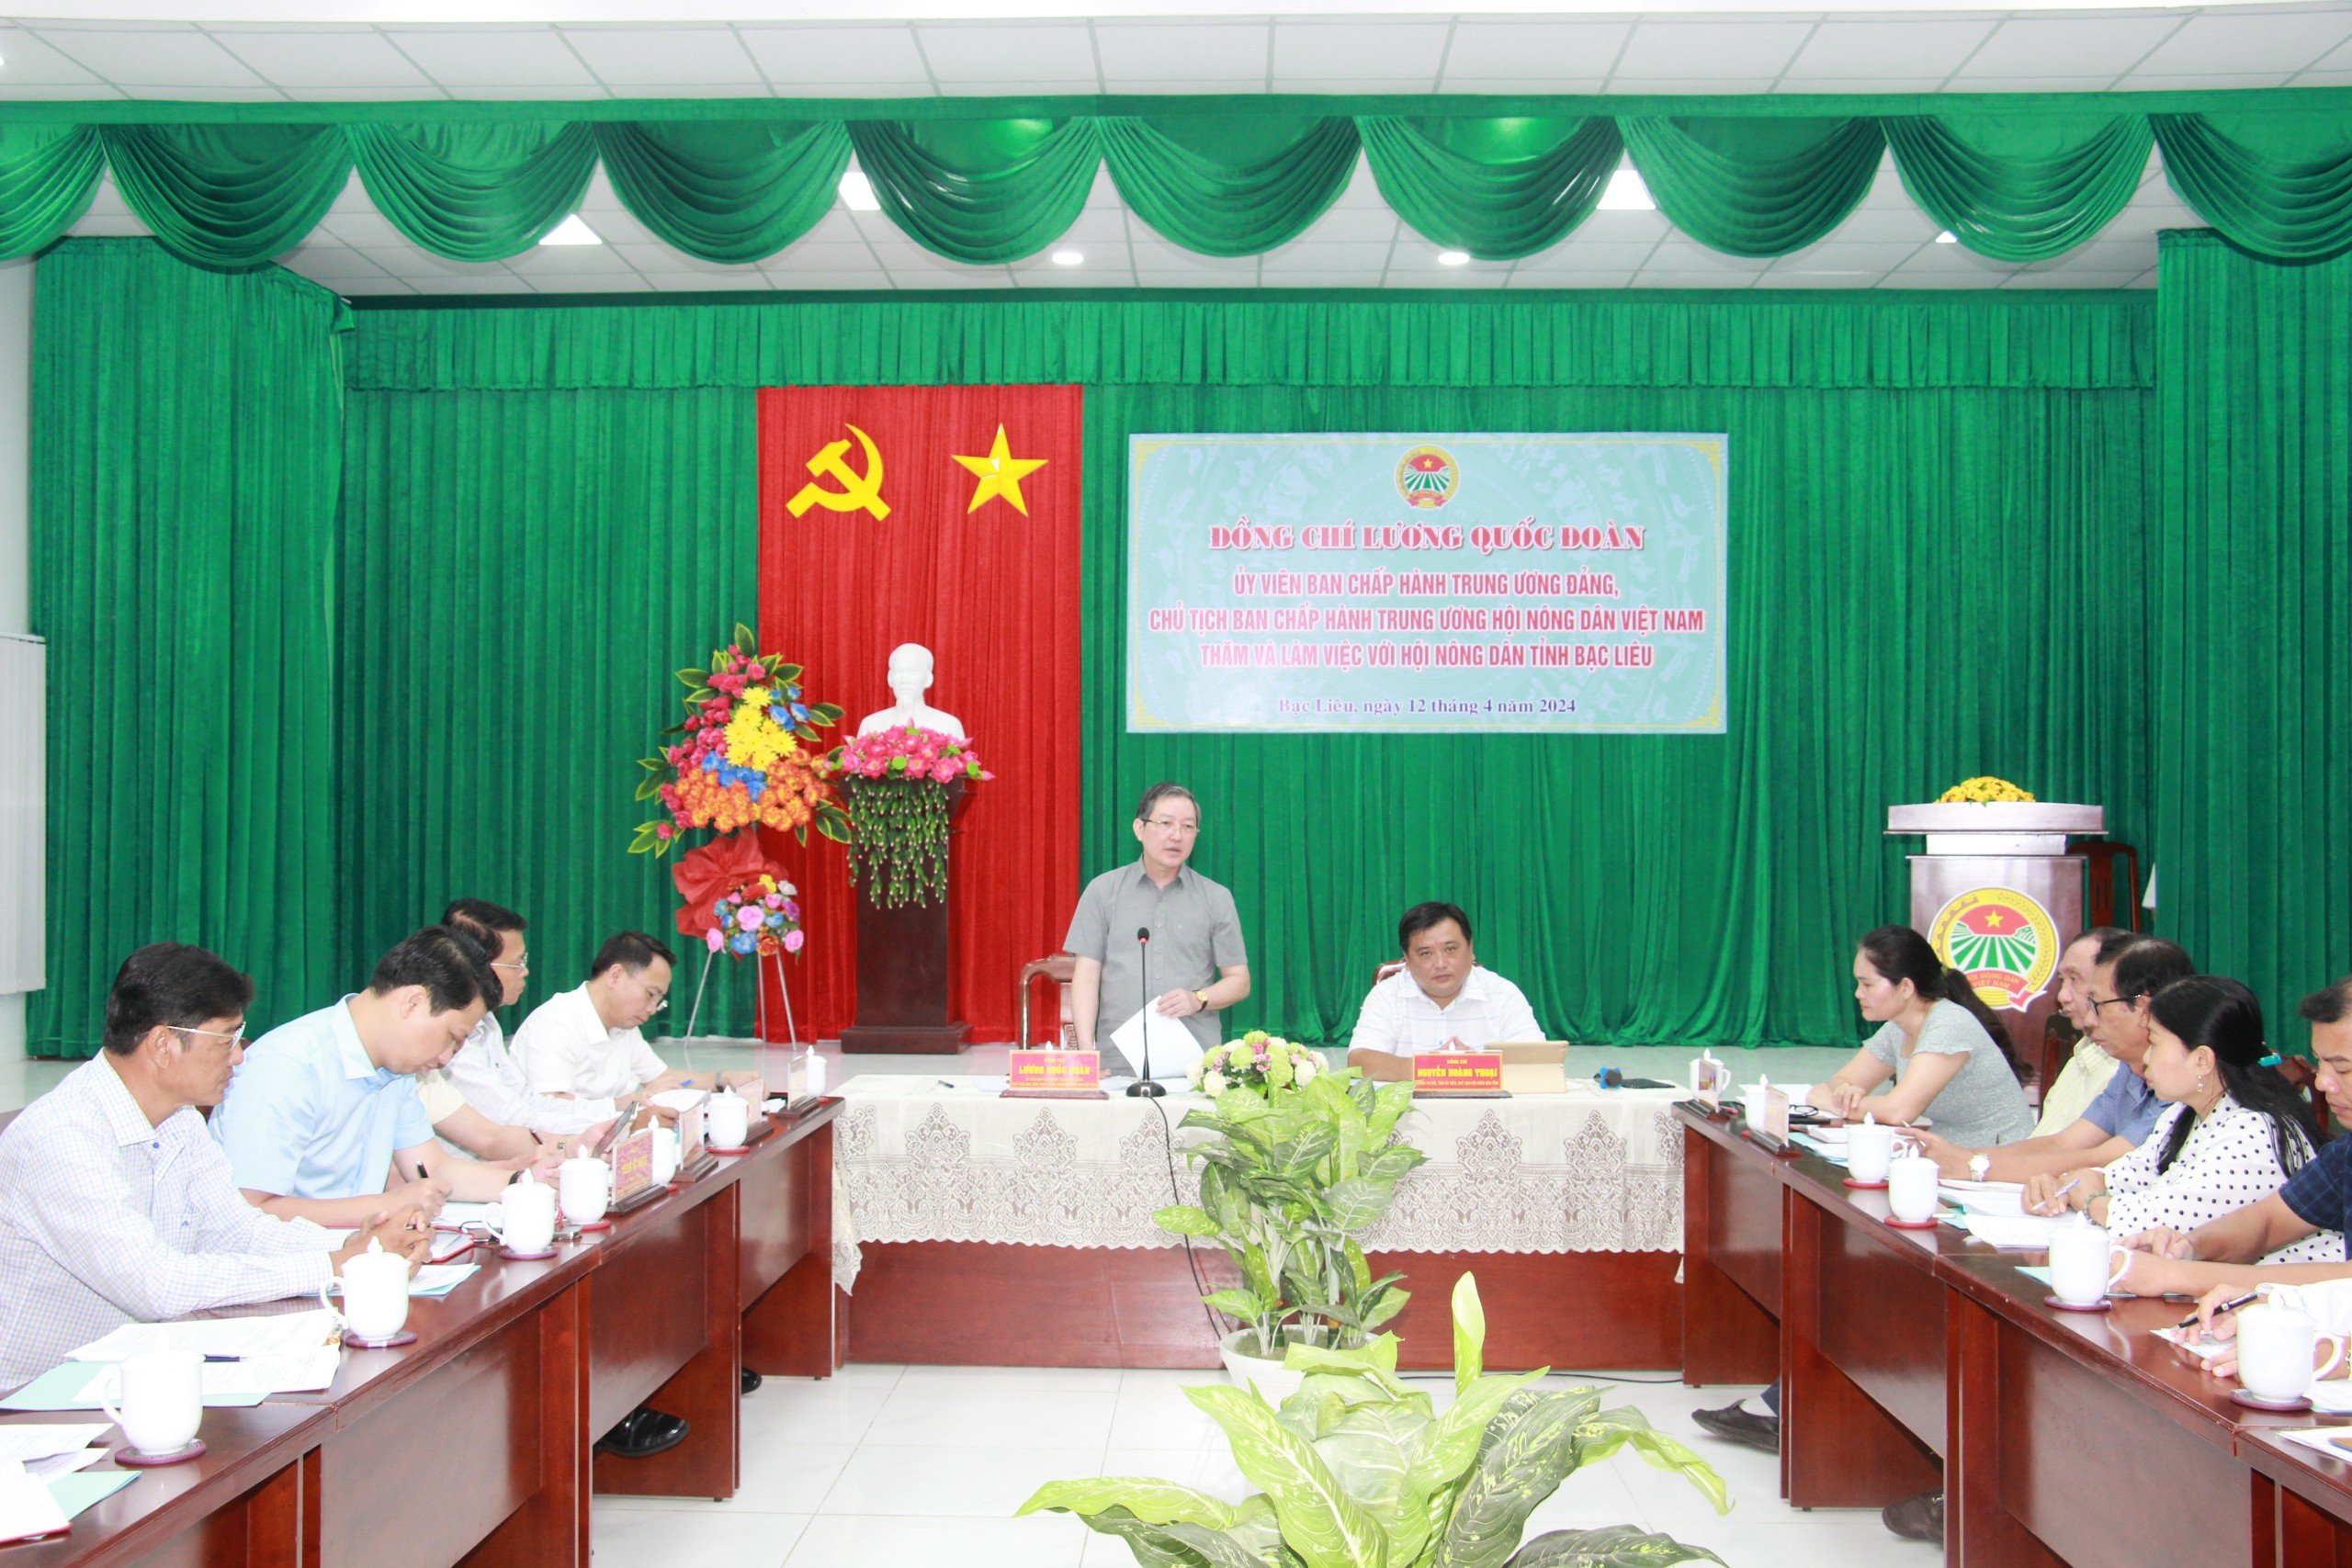 Làm việc tại Bạc Liêu,  Chủ tịch Hội NDVN Lương Quốc Đoàn nhấn mạnh phát triển kinh tế tập thể trong nông nghiệp- Ảnh 2.